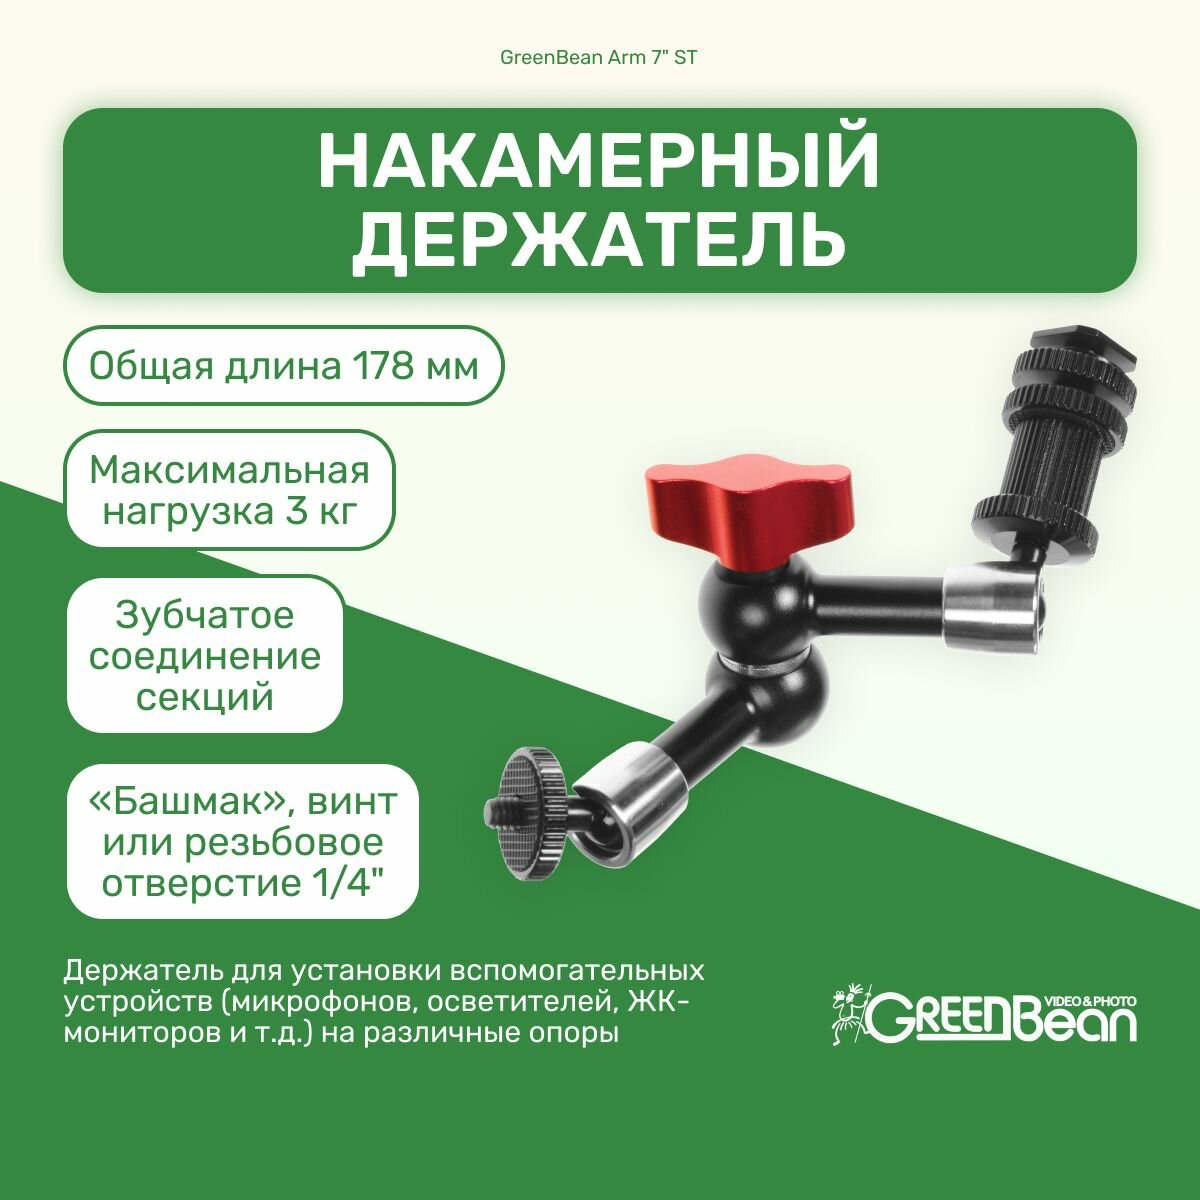 Накамерный держатель GreenBean Arm 7" ST для осветителей, мониторов, микрофонов и т. д. на горячий башмак для видео и фото съемок